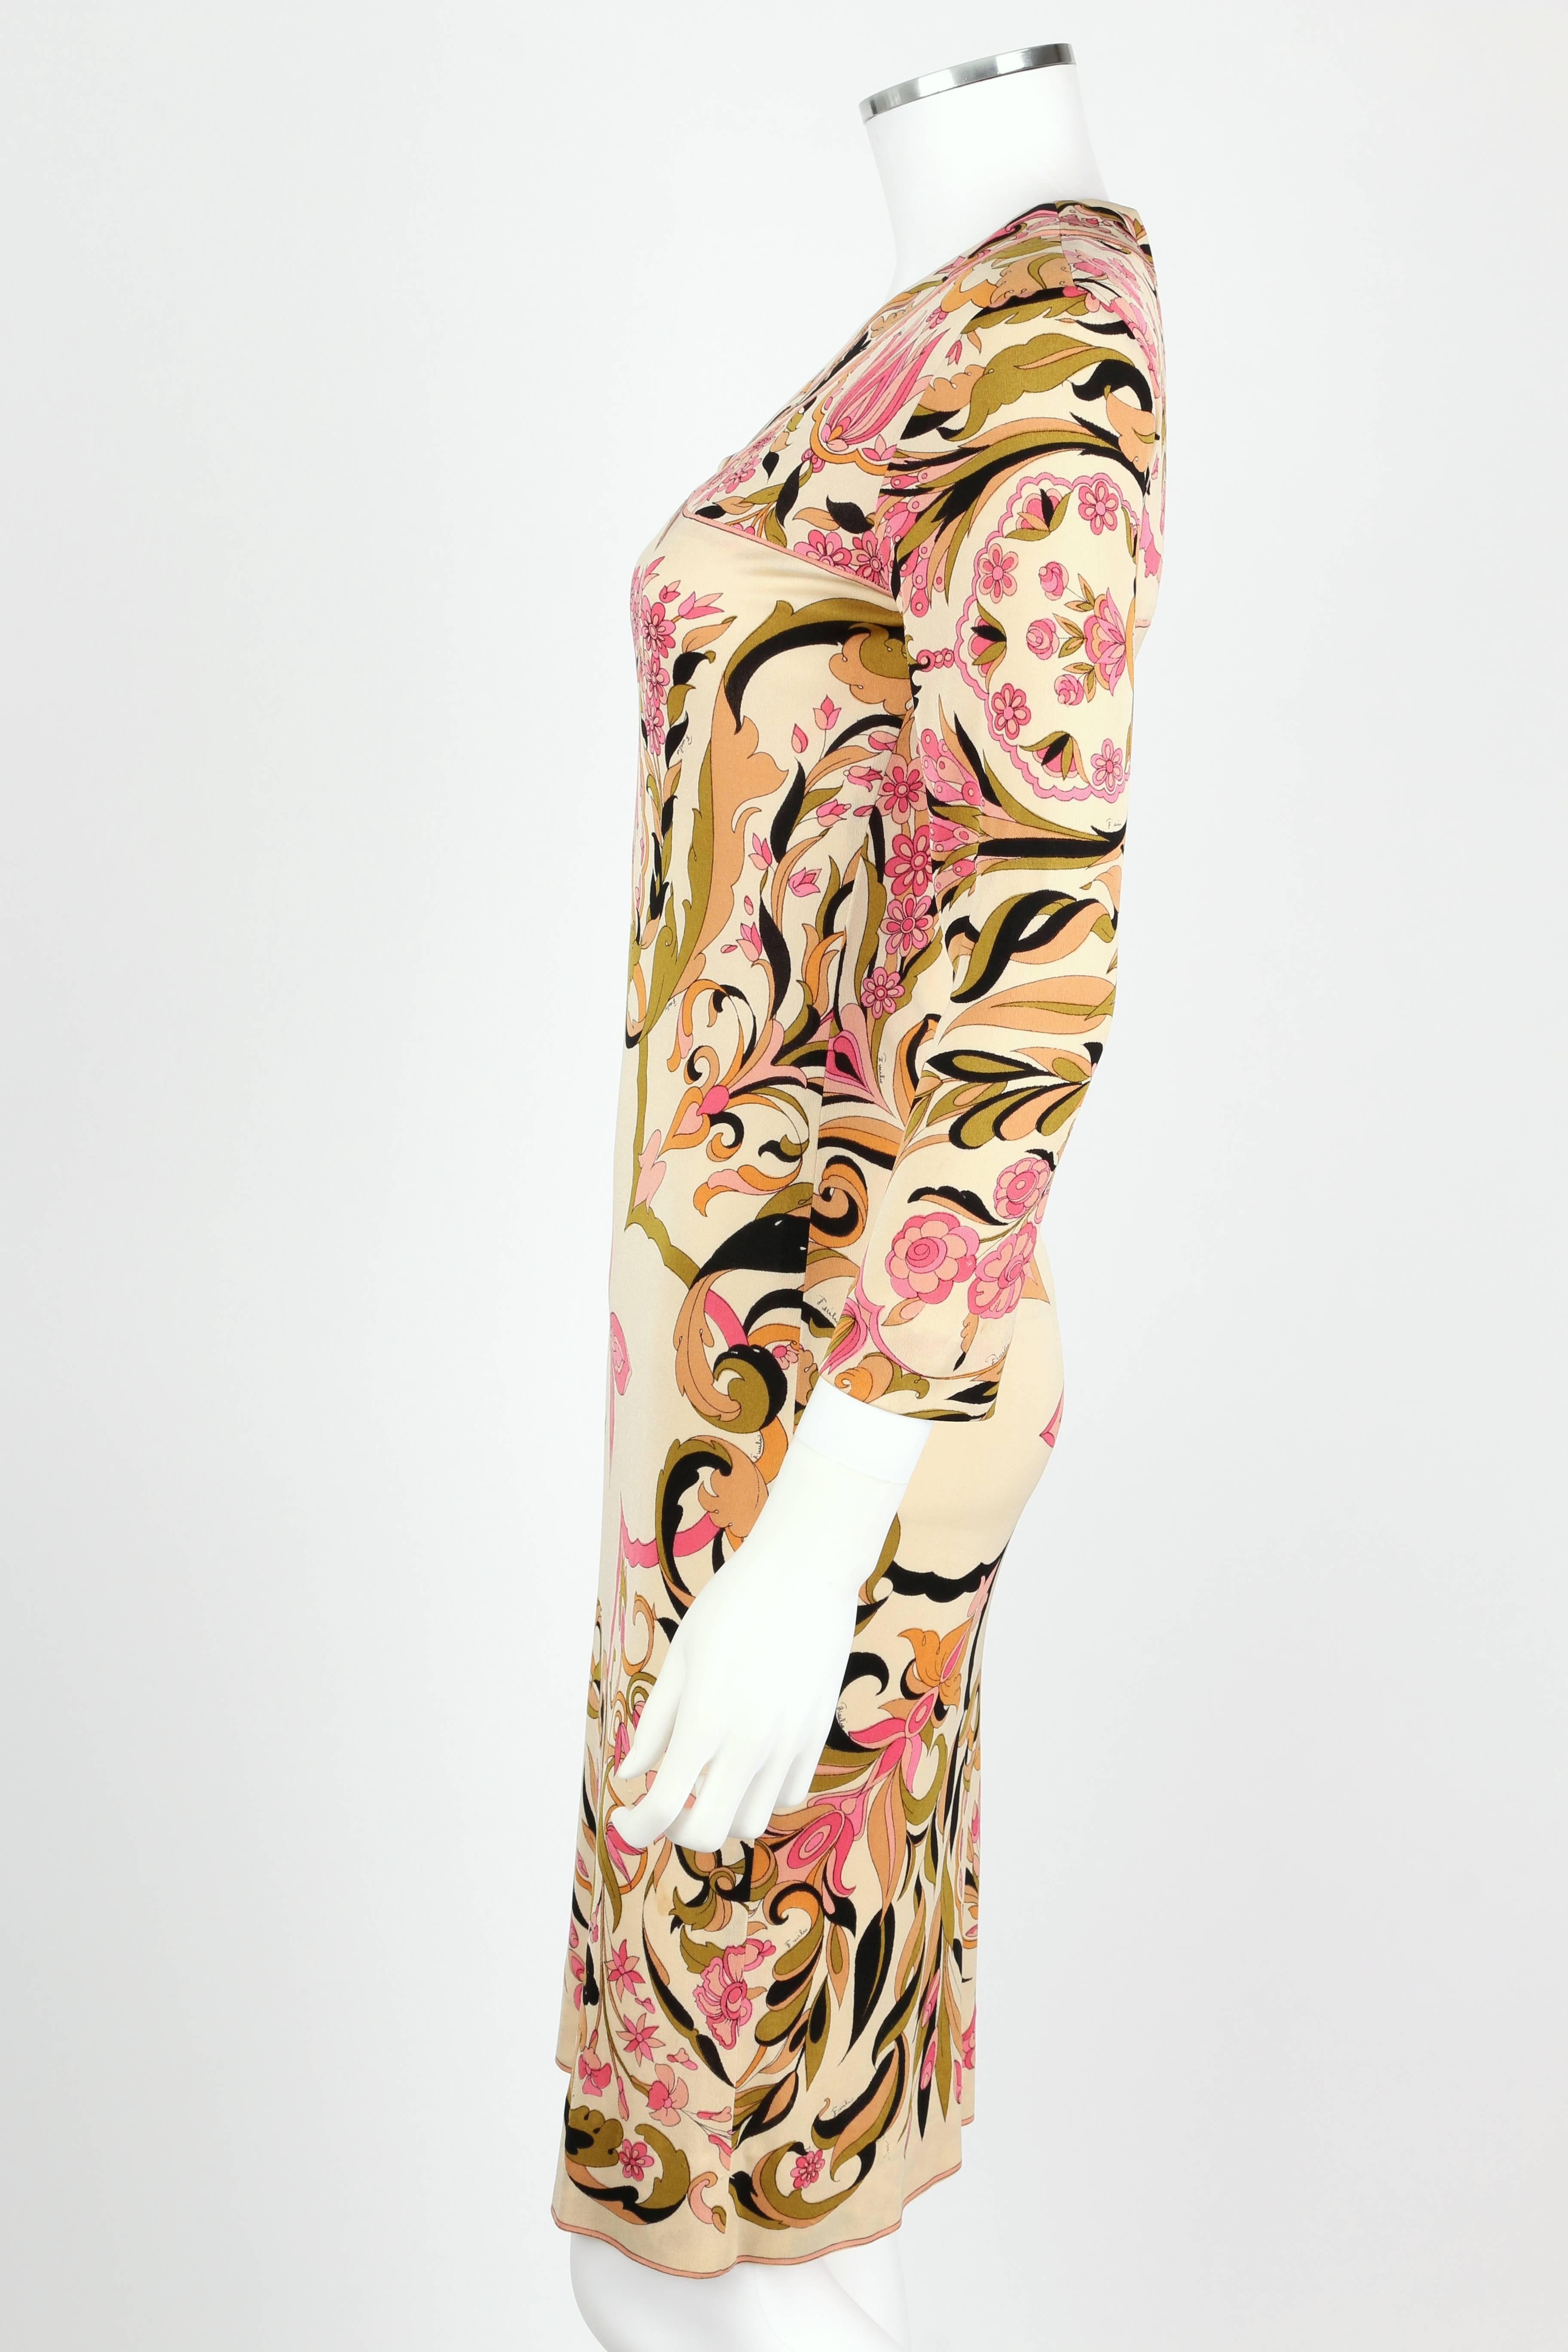 EMILIO PUCCI Robe fourreau en soie rose à imprimé floral kaléidoscope multicolore, années 1960 Pour femmes en vente